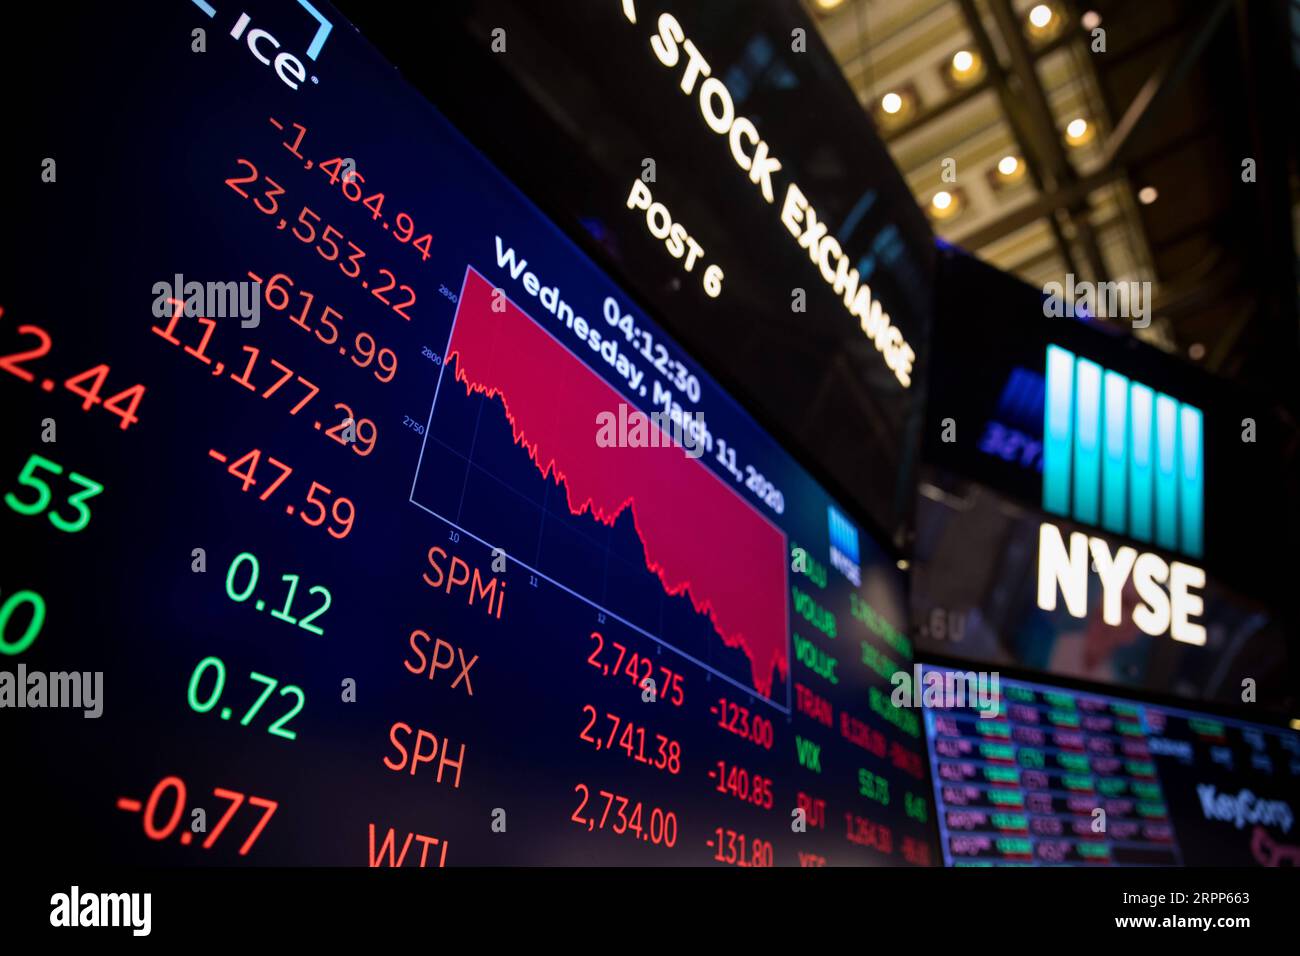 News Bilder des Tages 200311 -- NEW YORK, 11 marzo 2020 -- gli schermi mostrano i dati di trading al New York Stock Exchange NYSE di New York, negli Stati Uniti, l'11 marzo 2020. La Dow Jones Industrial Average è scesa di 1.464,94 punti, o 5,86%, a 23.553,22. L'indice azionario del 30 è caduto in un territorio di mercato degli orsi, in calo di oltre il 20% rispetto alla chiusura record del mese scorso. La S&P 500 è diminuita di 140,85 punti, o del 4,89%, per finire a 2.741,38. Il Nasdaq Composite Index è sceso di 392,20 punti, o 4,70%, a 7.952,05. Foto di /Xinhua U.S.-NEW YORK-STOCKS MichaelxNagle PUBLICATIONxNOTxINxC Foto Stock